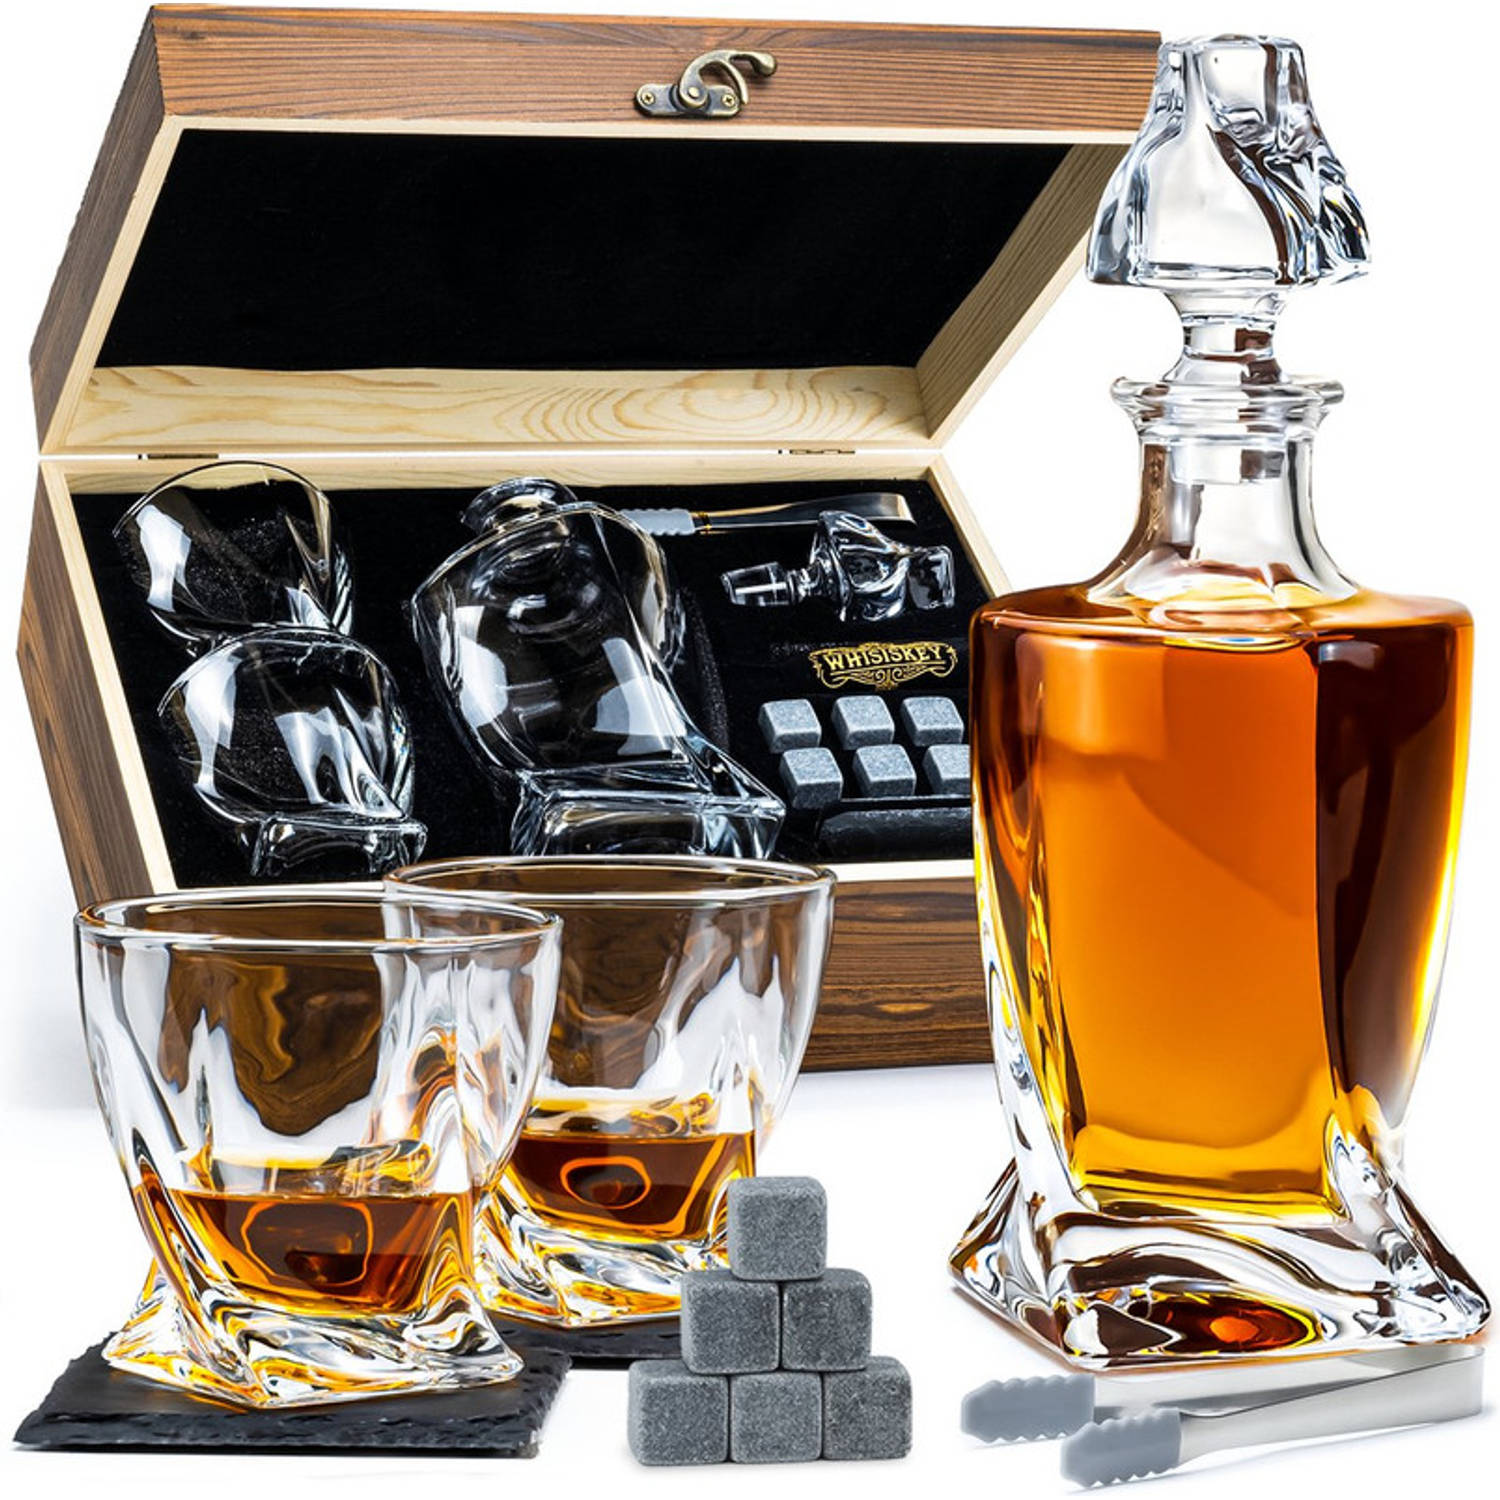 Whisiskey Whiskey - Whiskey Glazen - Luxe Whiskey Karaf Set - Decanteer Set - Whisky Set - Incl. 2 Twisted Glazen | Blokker